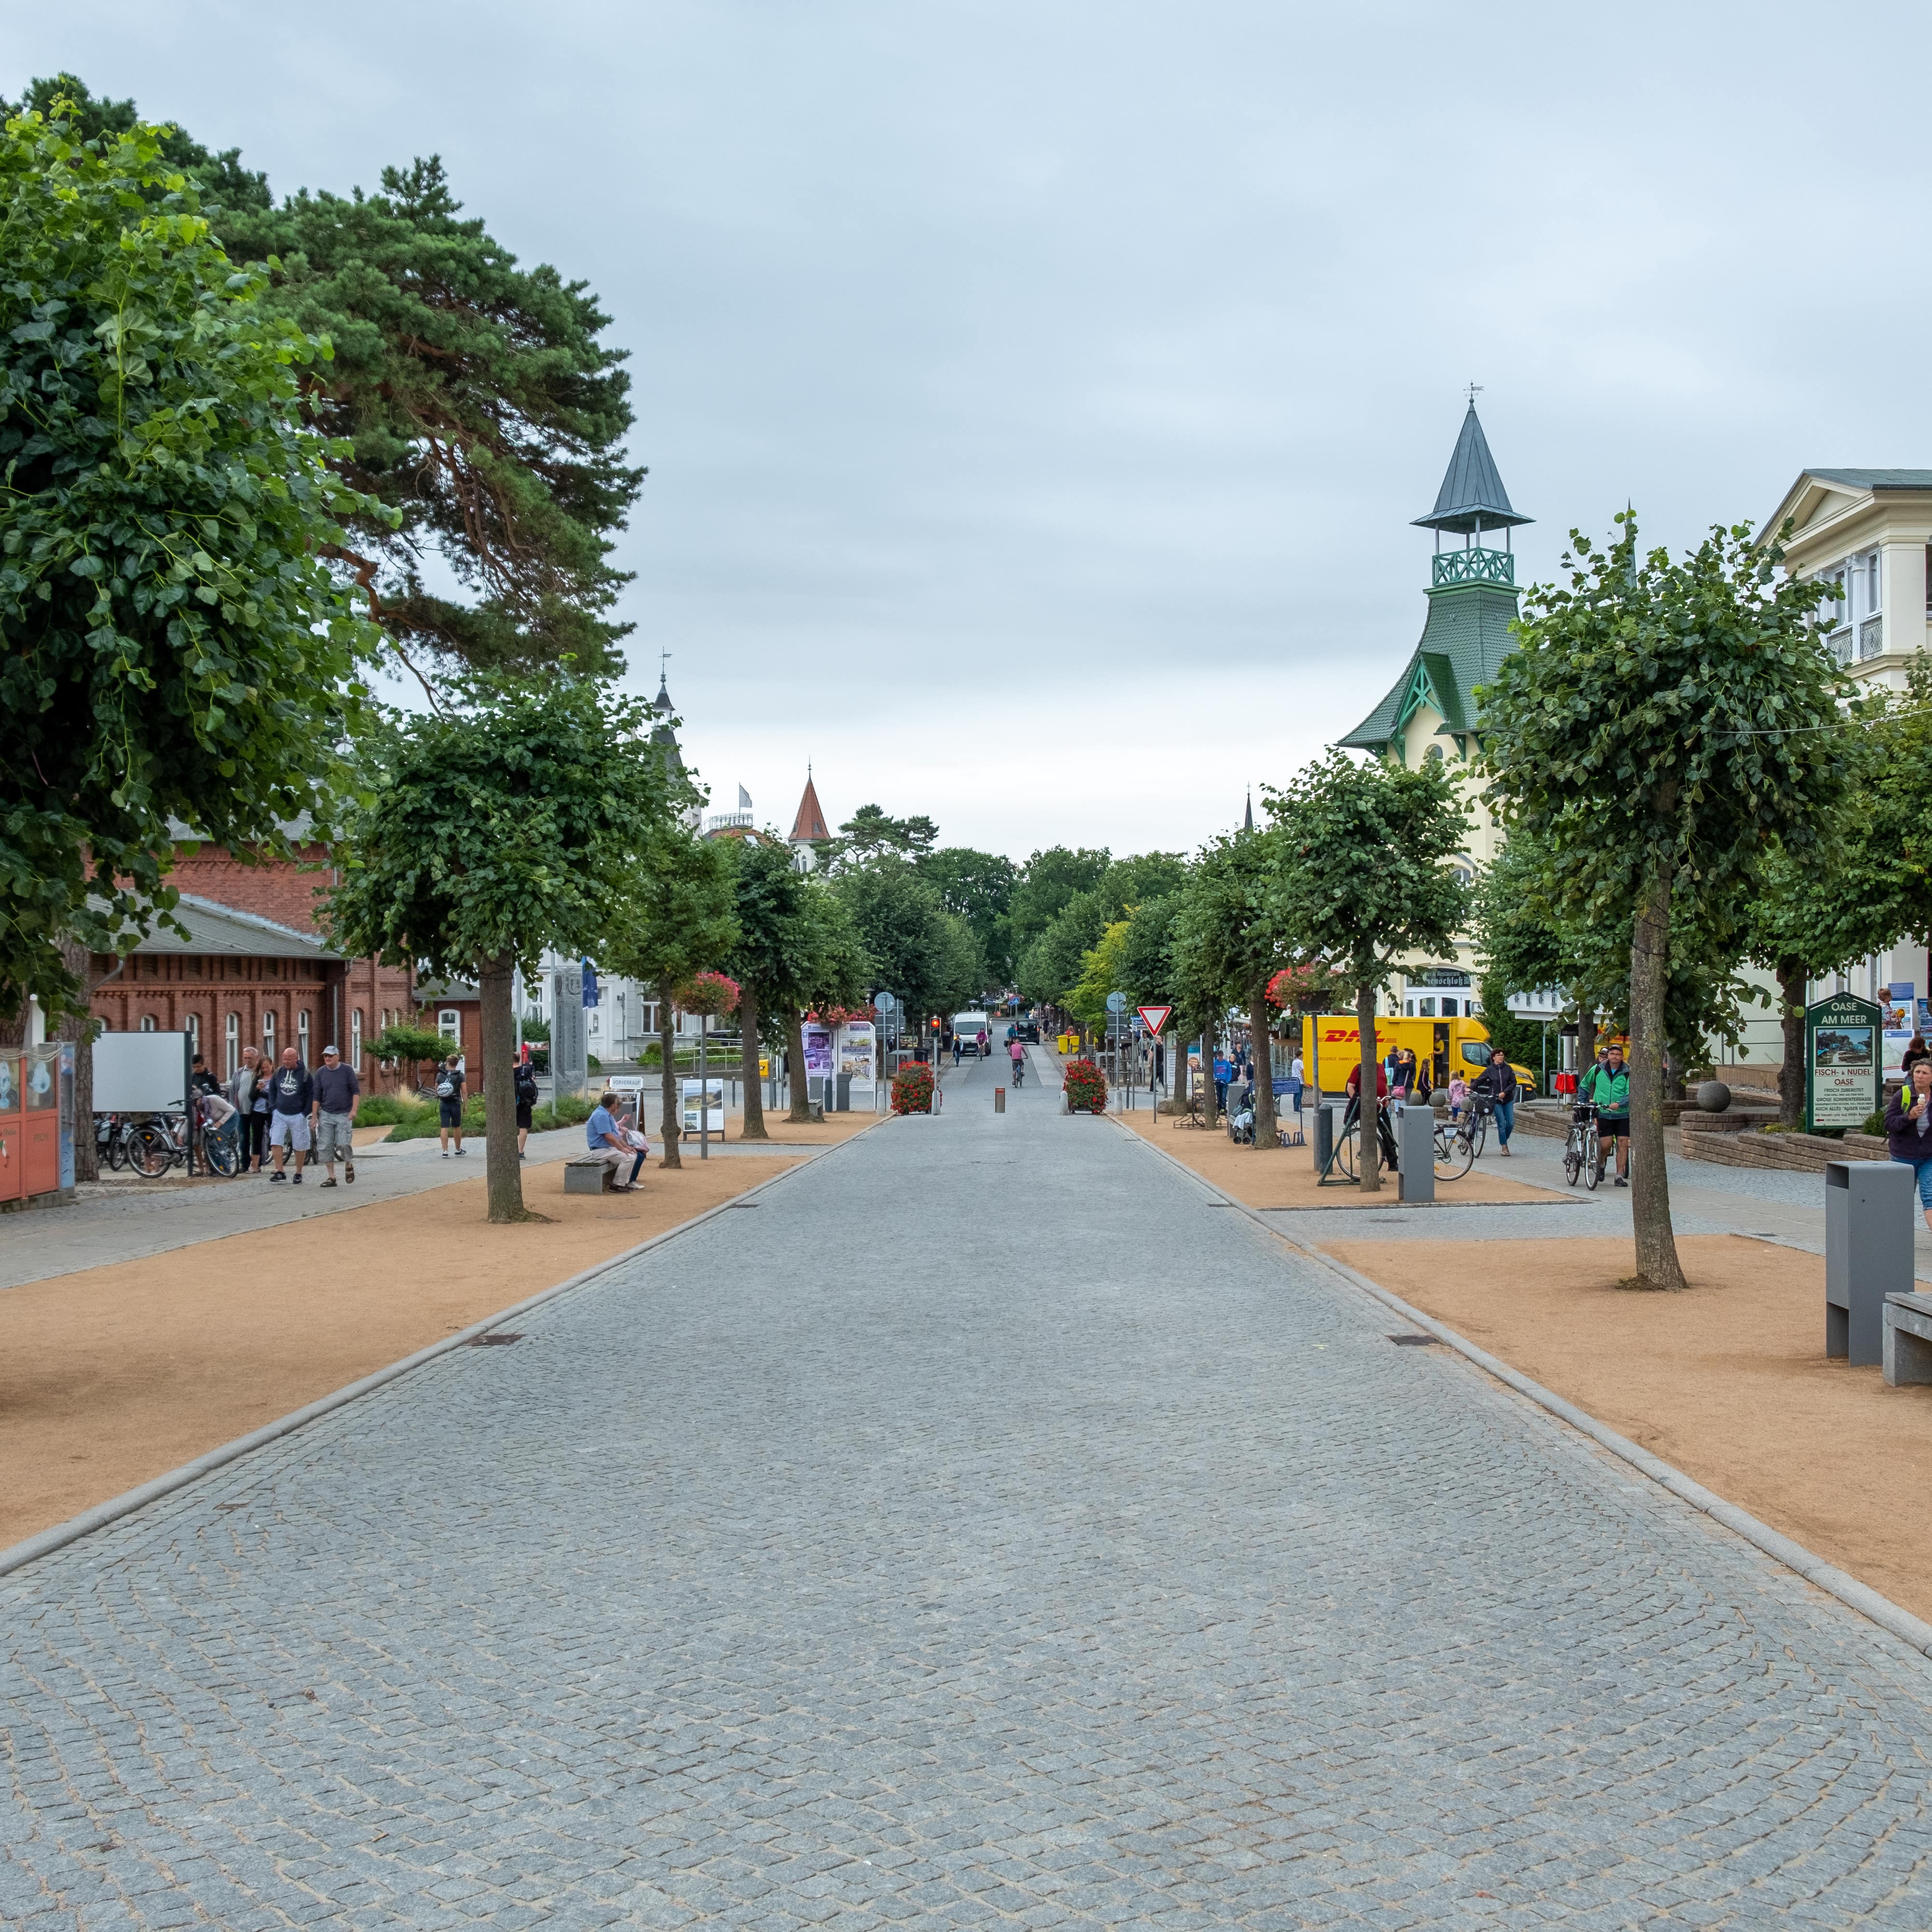 Eine Straße in Zinnowitz, links und rechts Bänke, Bäume und Leute.